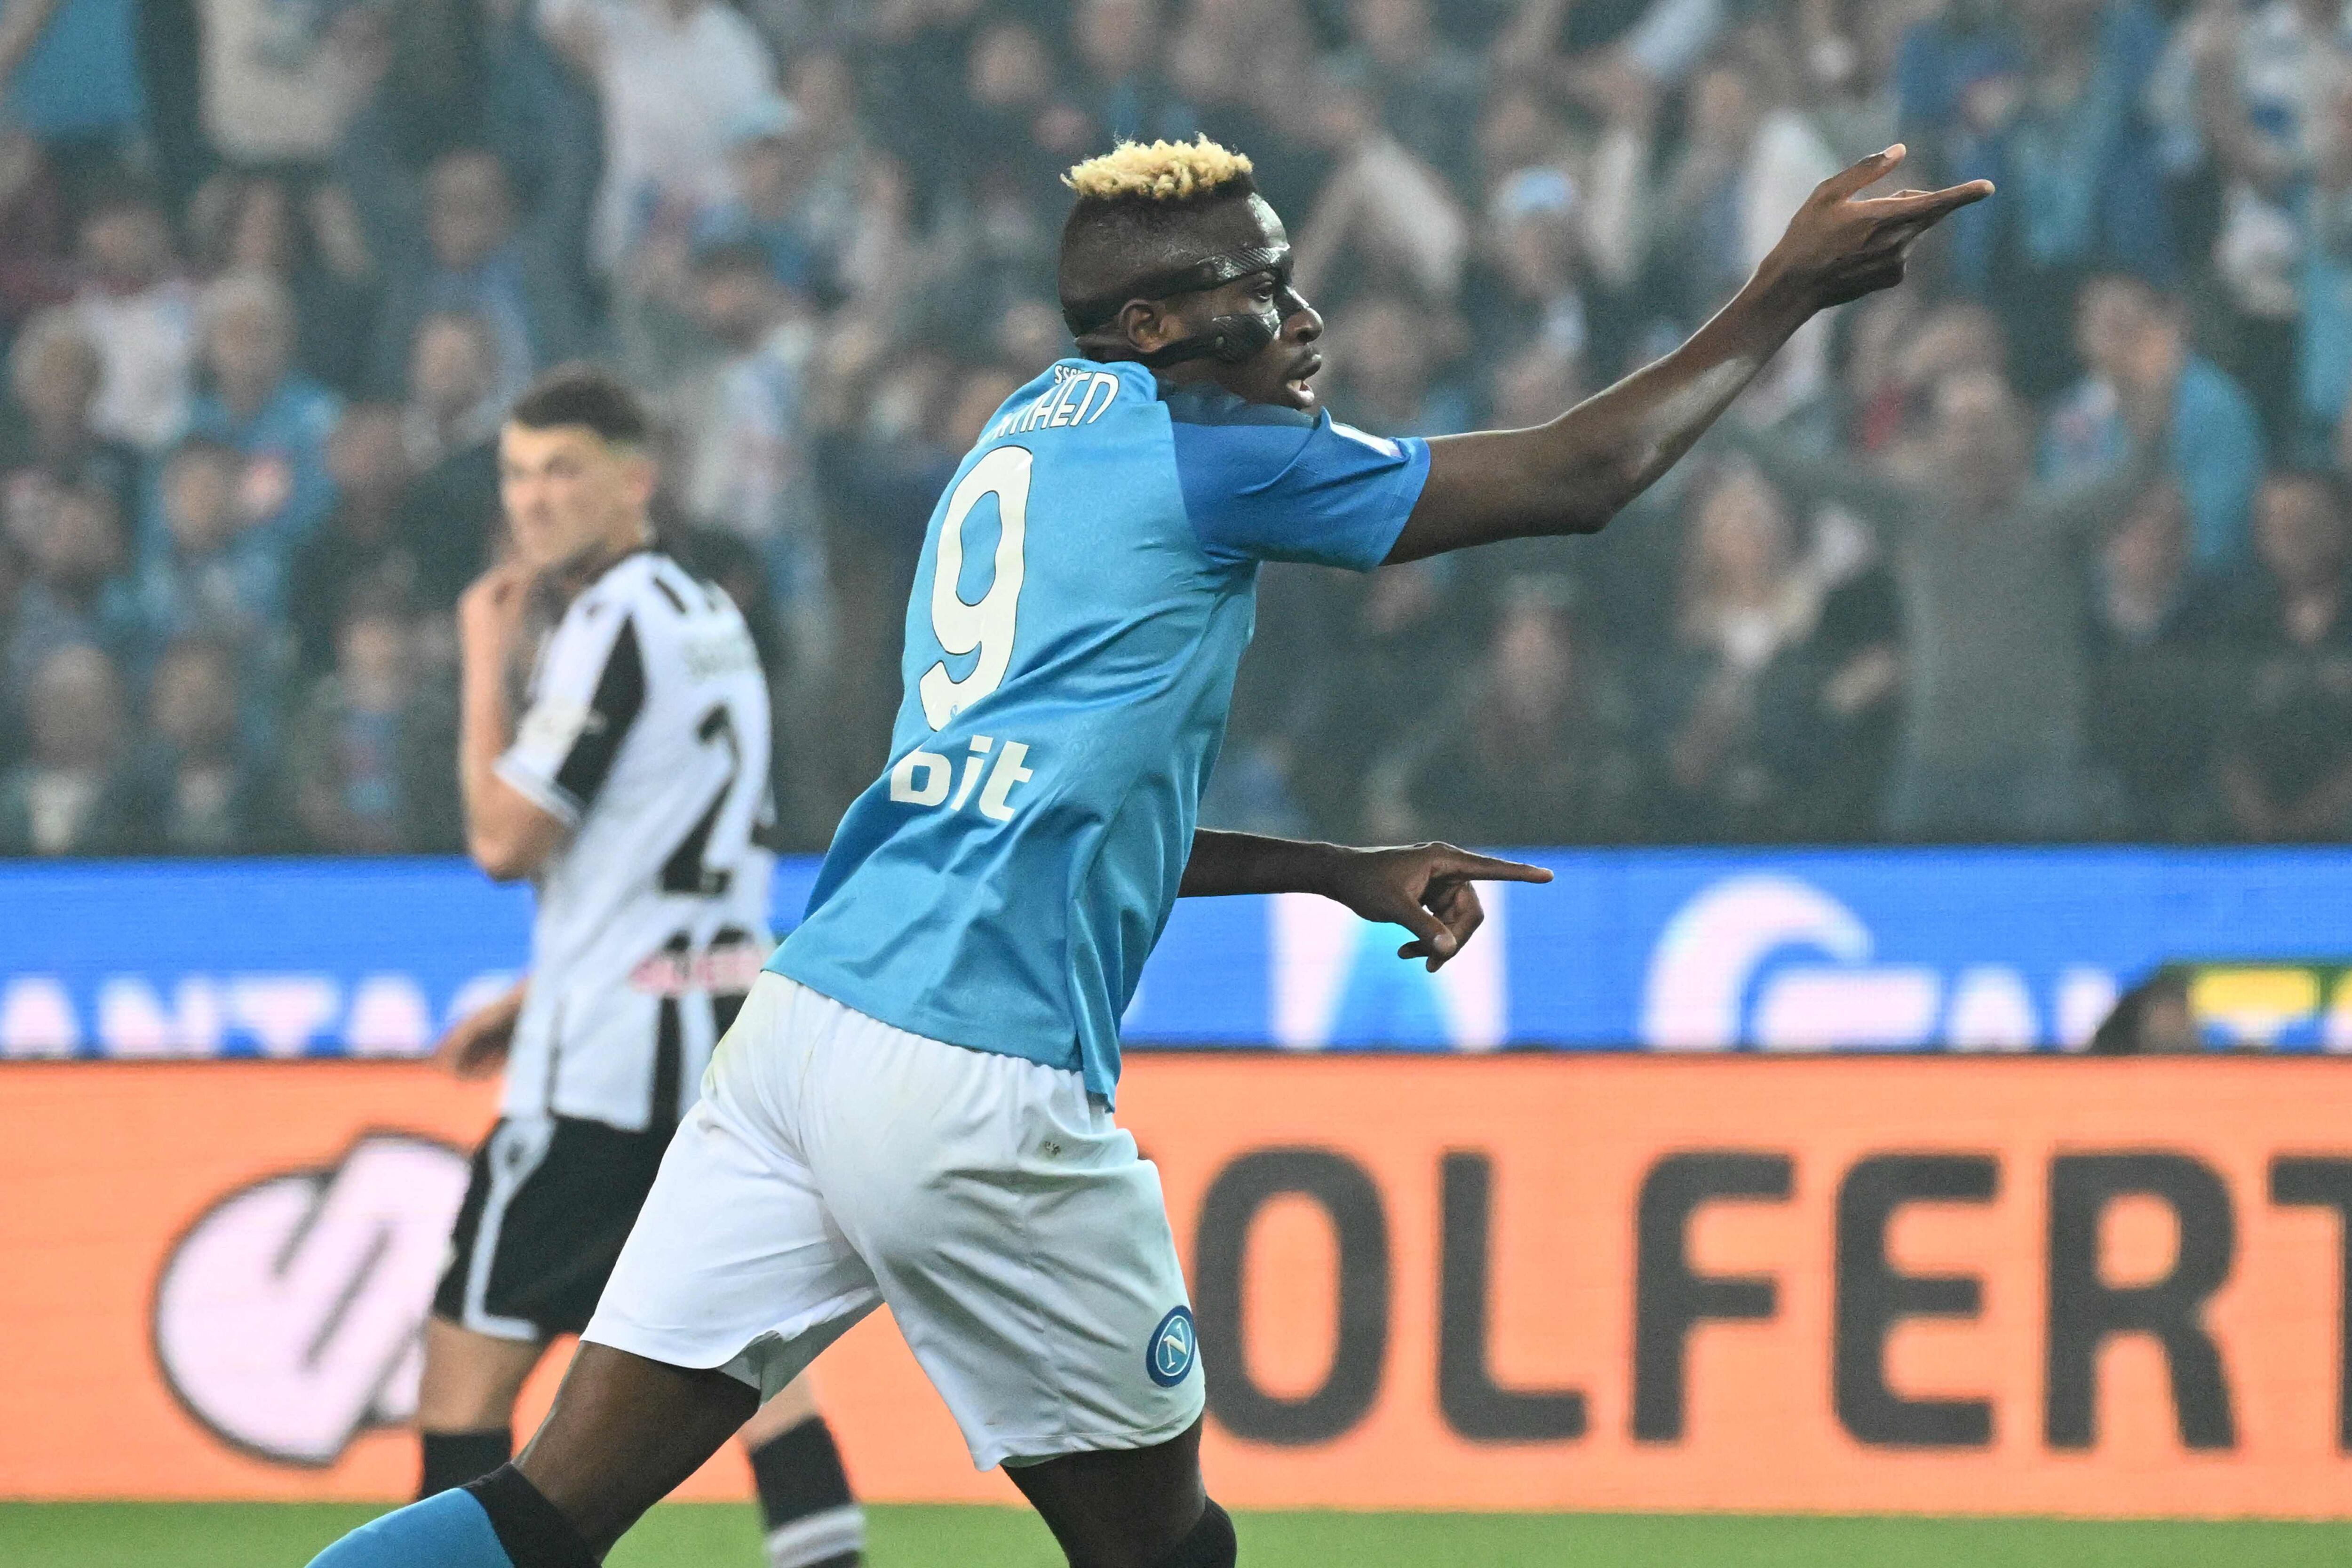 El nigeriano Victor Osimhen, goleador del Nápoles, volvió a hacer contacto con la red. Anotó el gol del empate ante Udinese y el Nápoles es campeón en la Serie A.